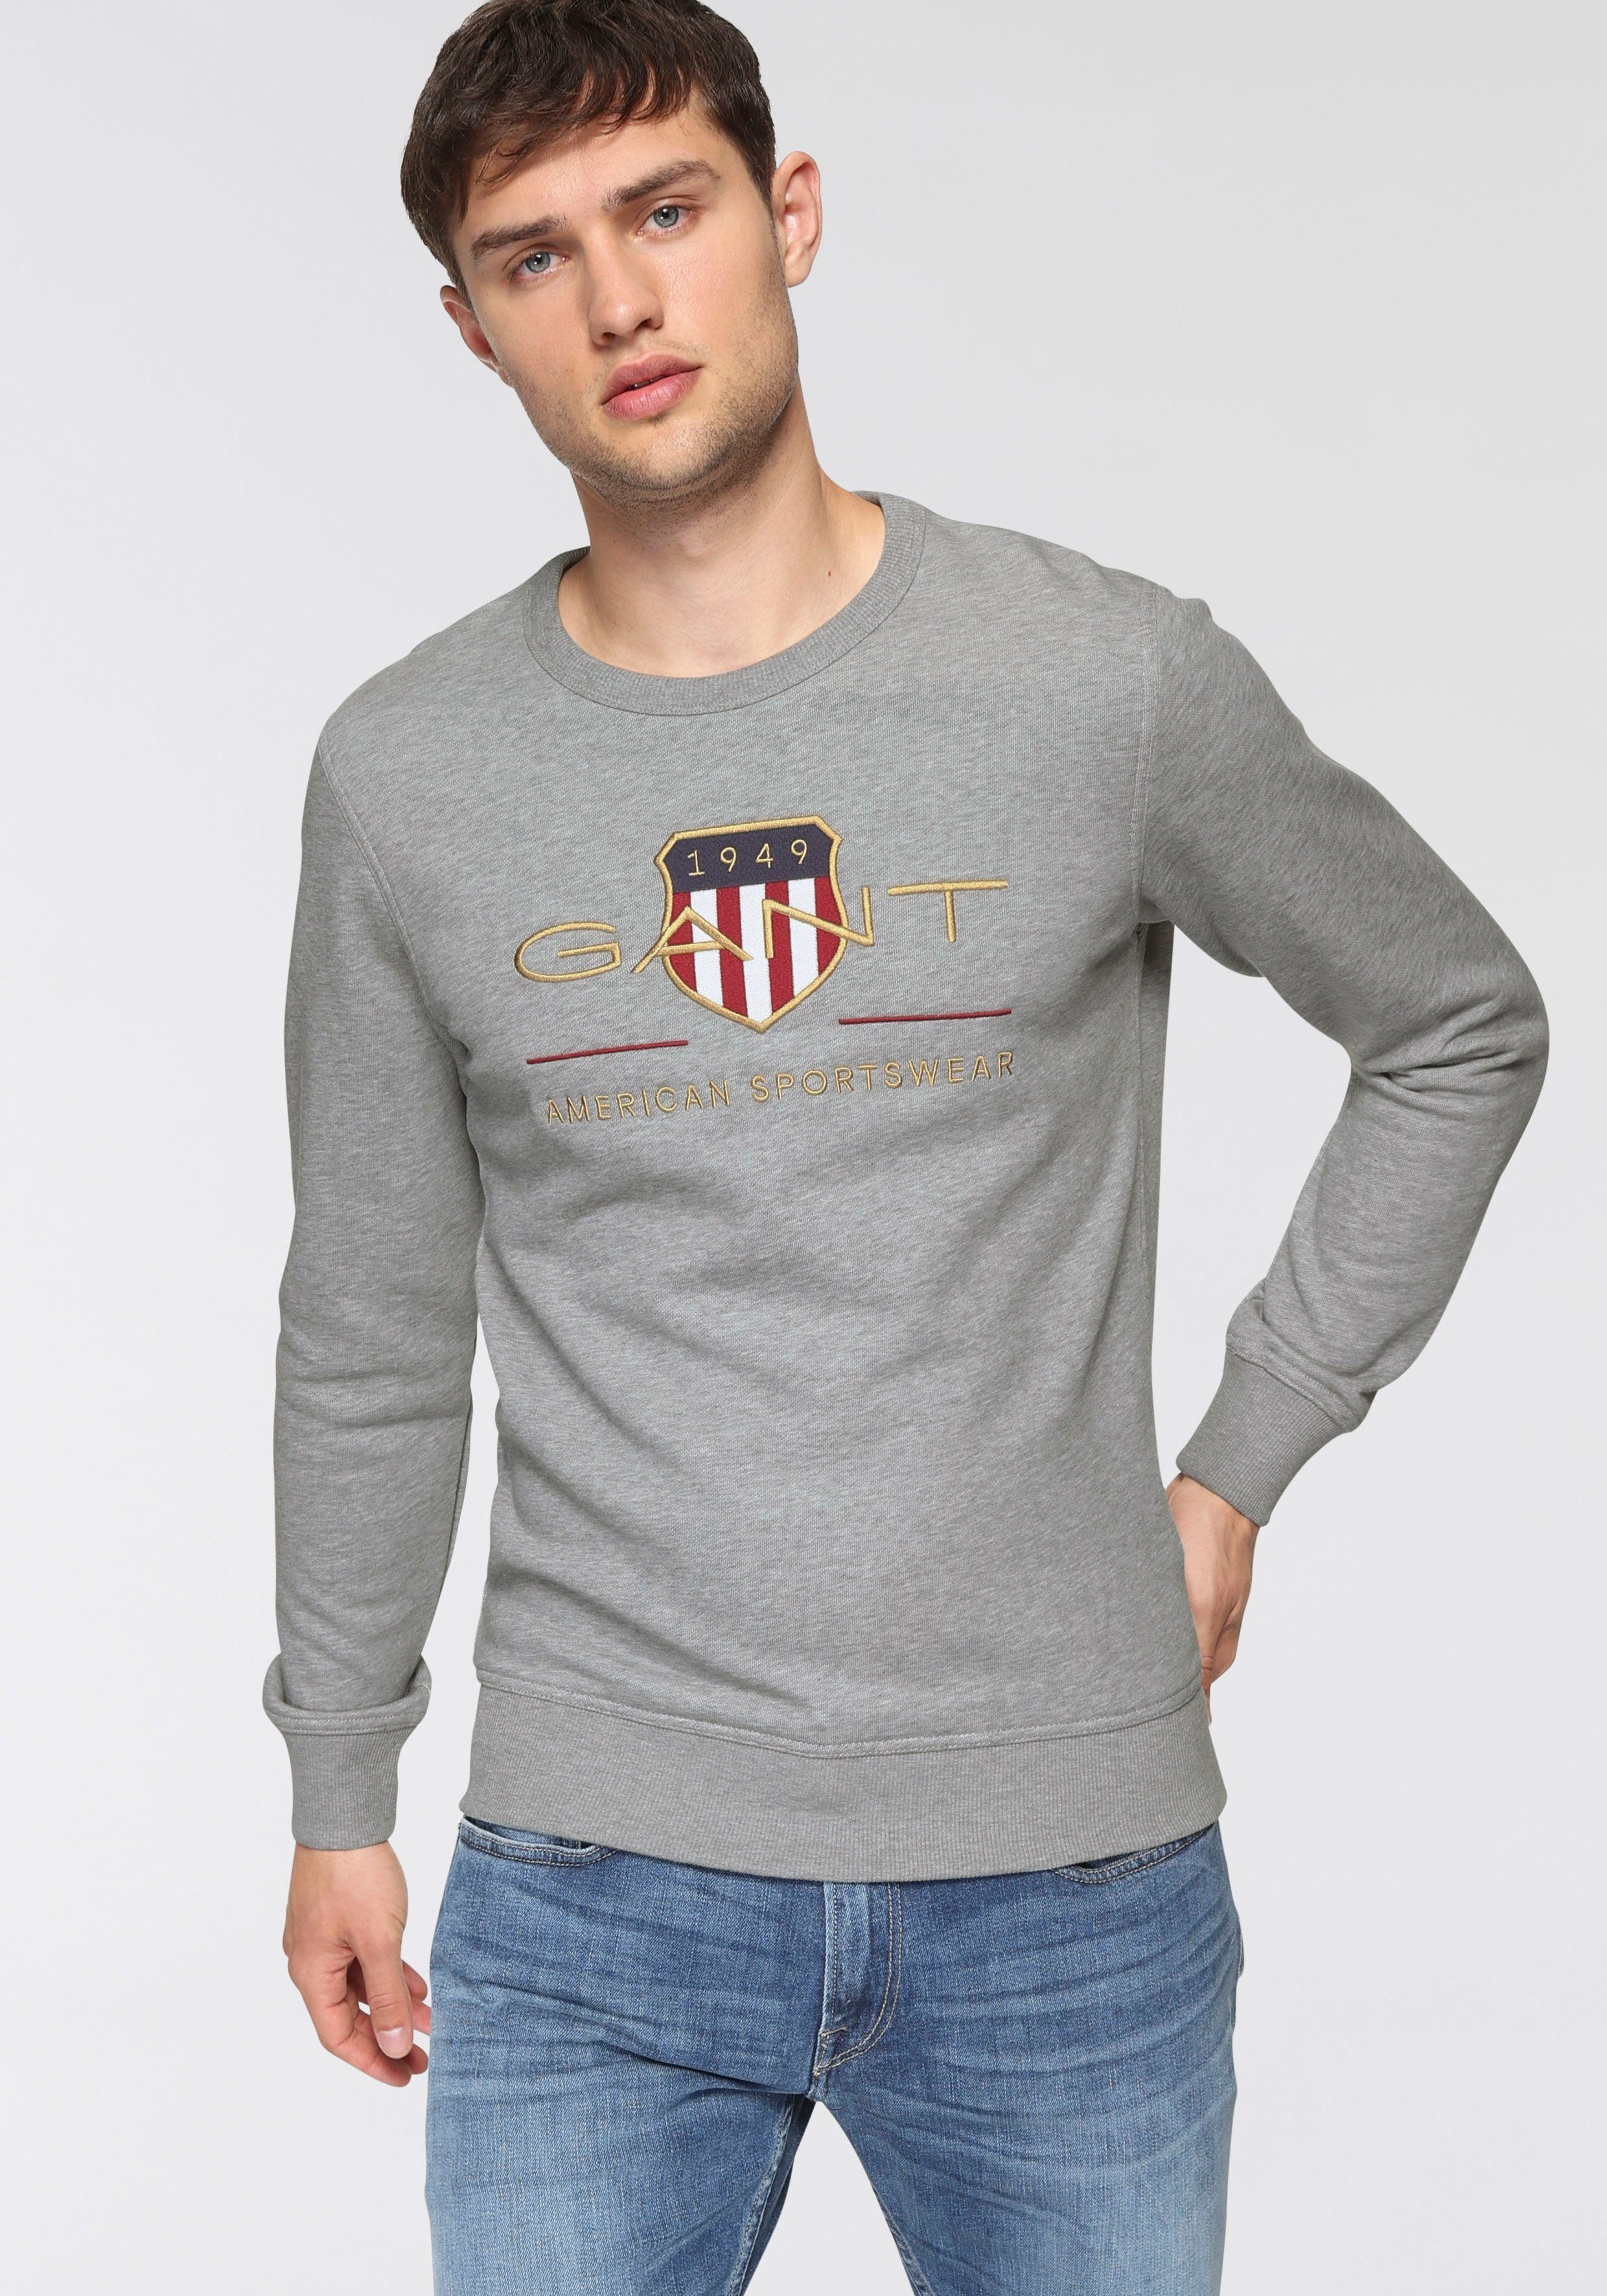 Gant C-NECK melange mit SHIELD geripptem Rundhalsausschnitt grey ARCHIVE Sweatshirt